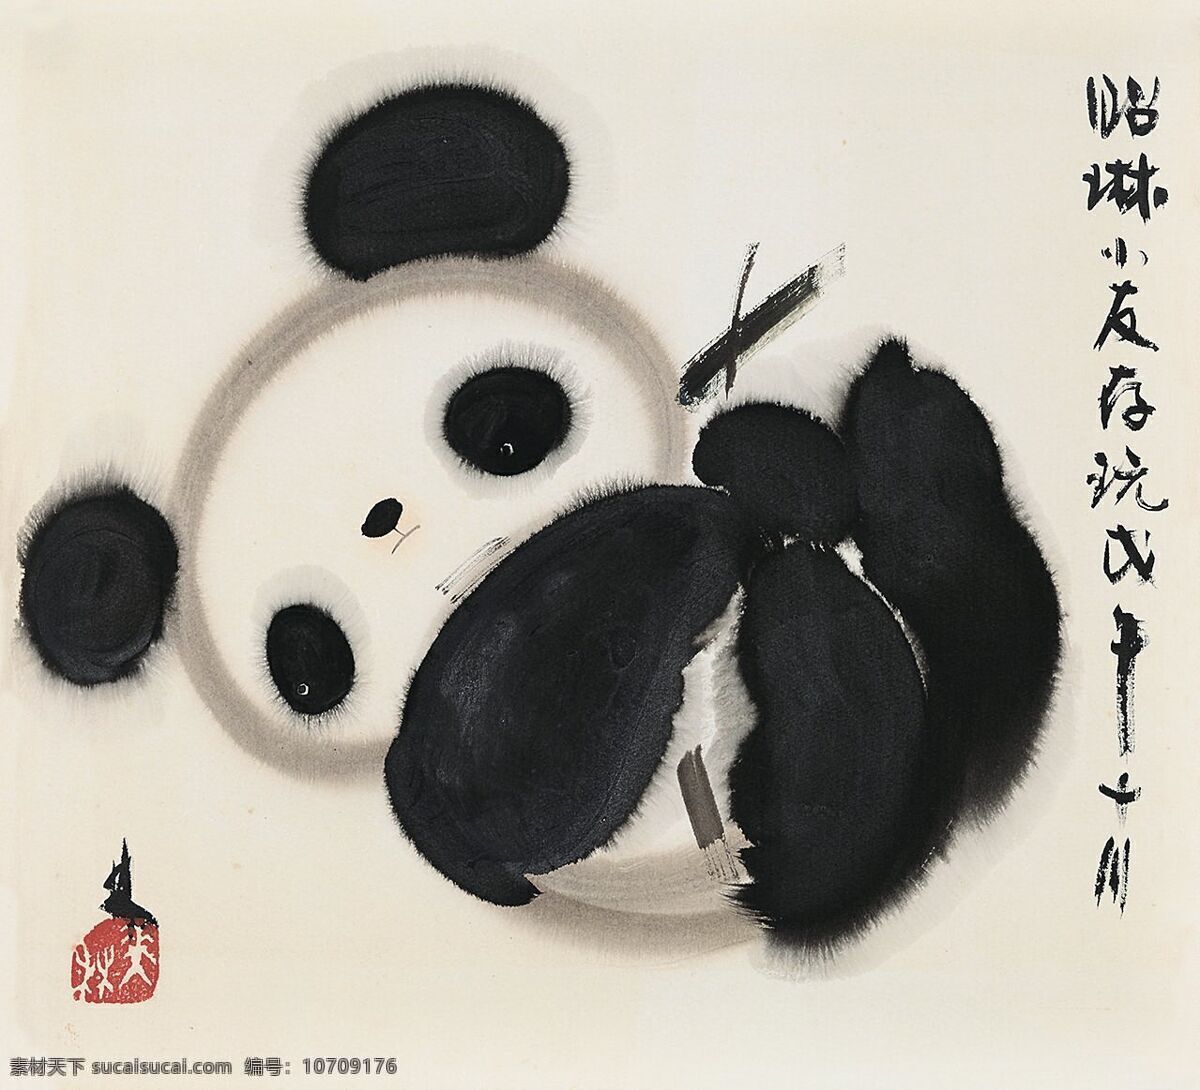 熊猫宝宝 韩美林作品 大熊猫 憨态可拘 活泼可爱 中国古代画 中国古画 文化艺术 绘画书法